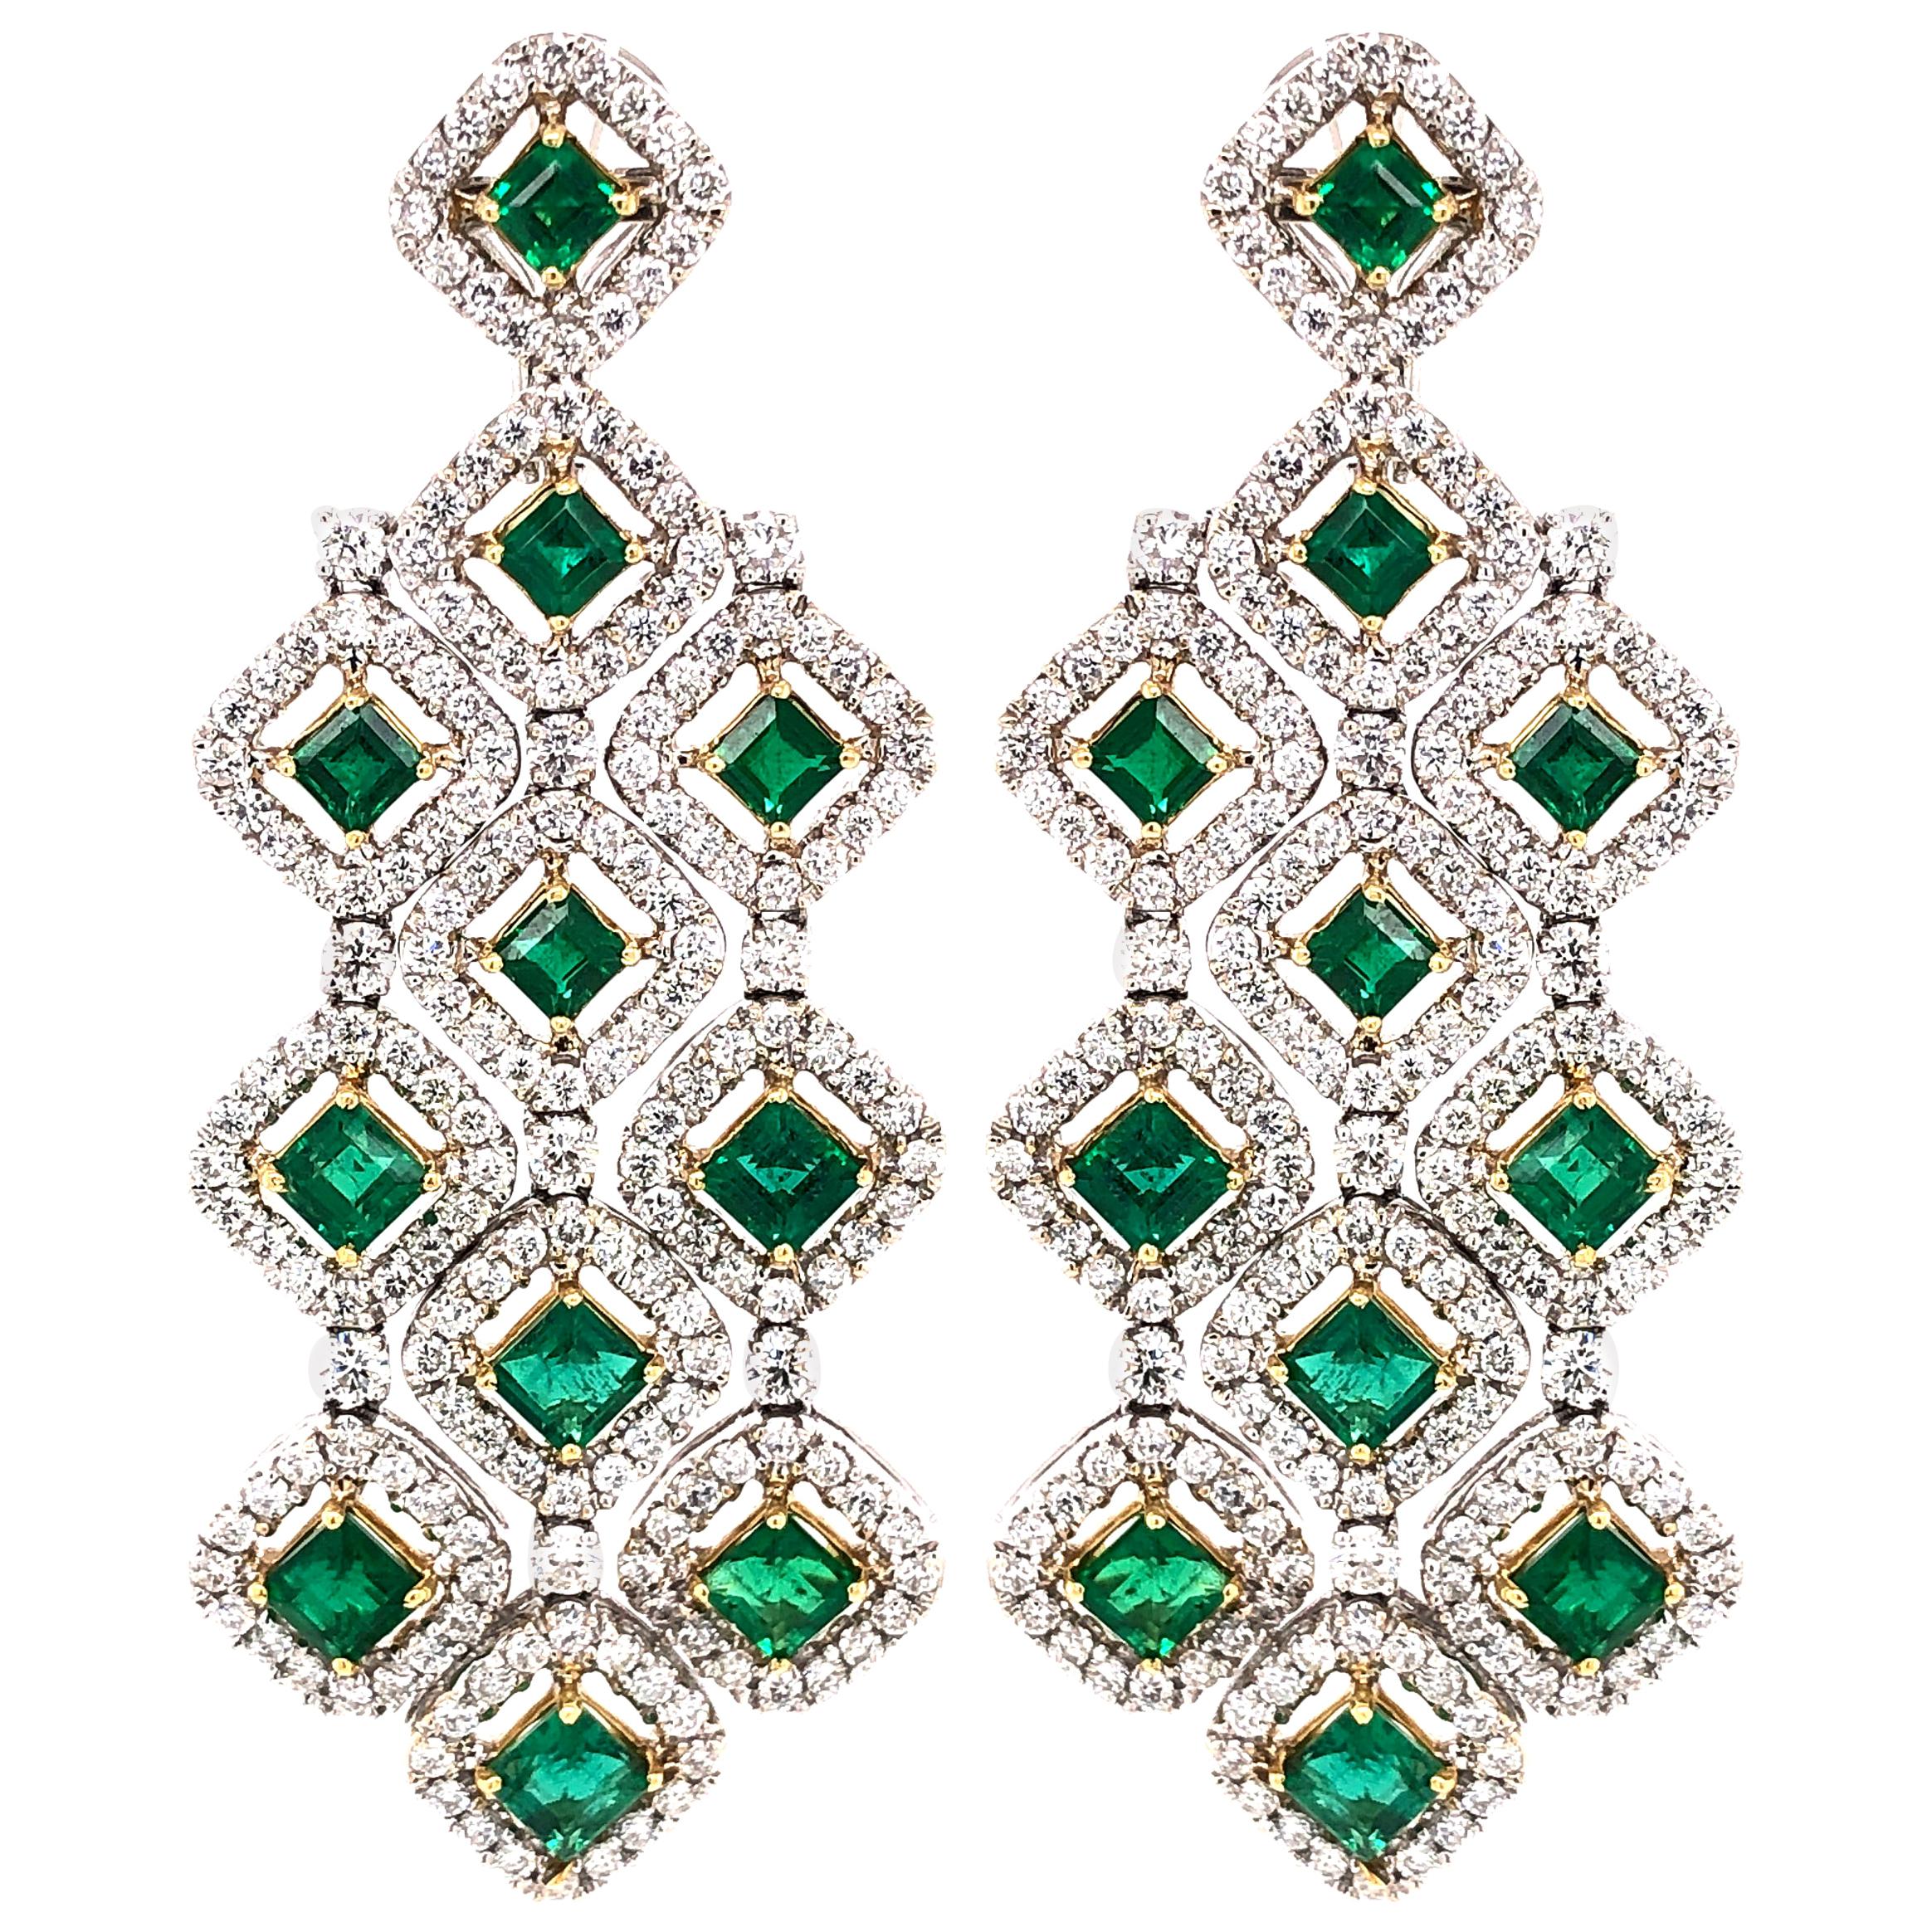 Zambian Square Cut Emeralds 7.11 Carat Chandelier 18k Gold Earrings For Sale